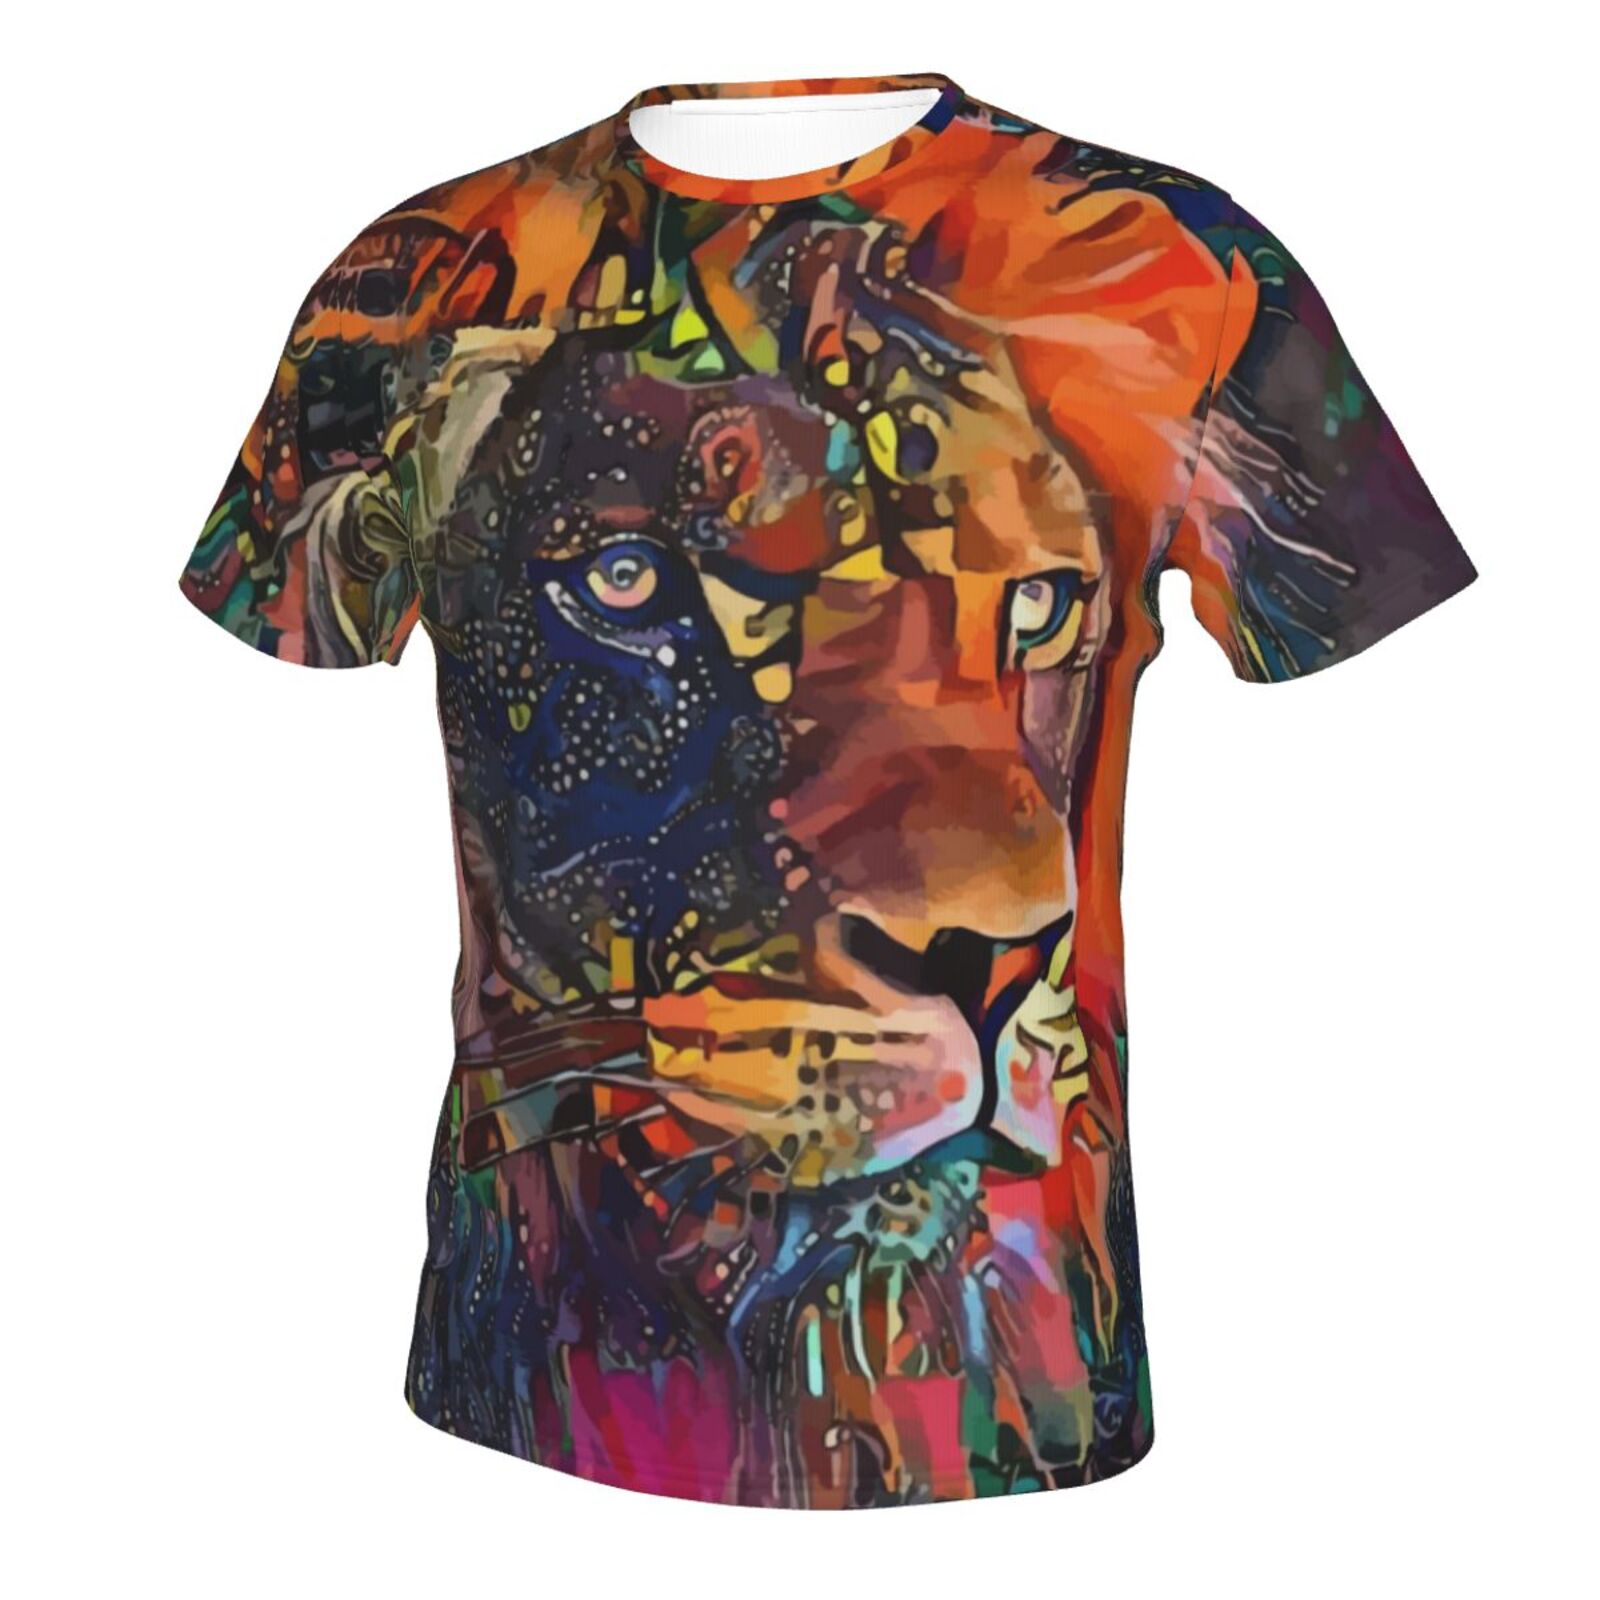 Nirkos Lion Medien Mischen Elemente Klassisch T Shirt